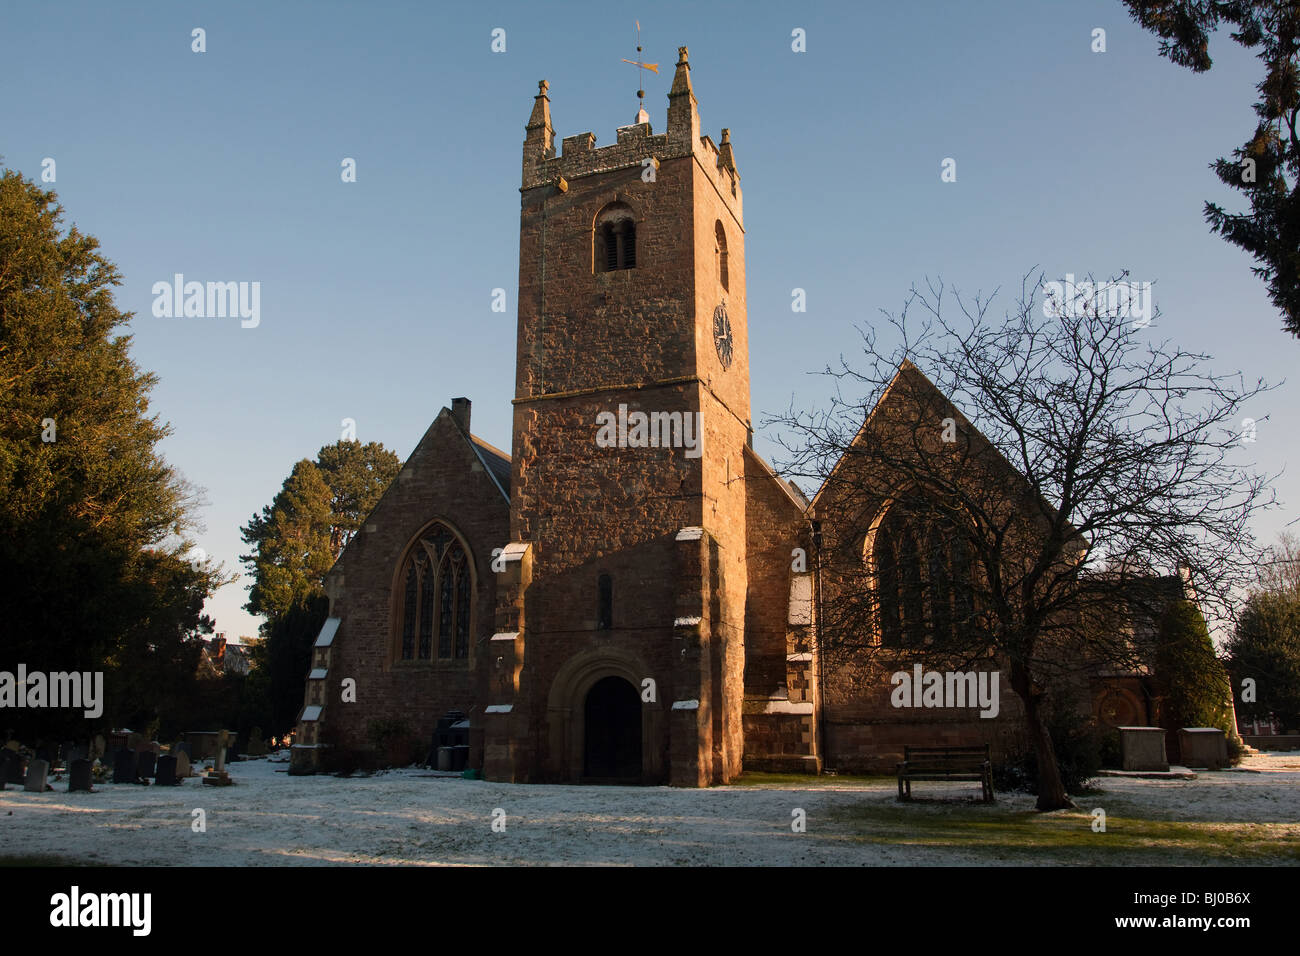 St Marys Church dans Worcestershire Tenbury Wells dans une fine couche de neige. Banque D'Images